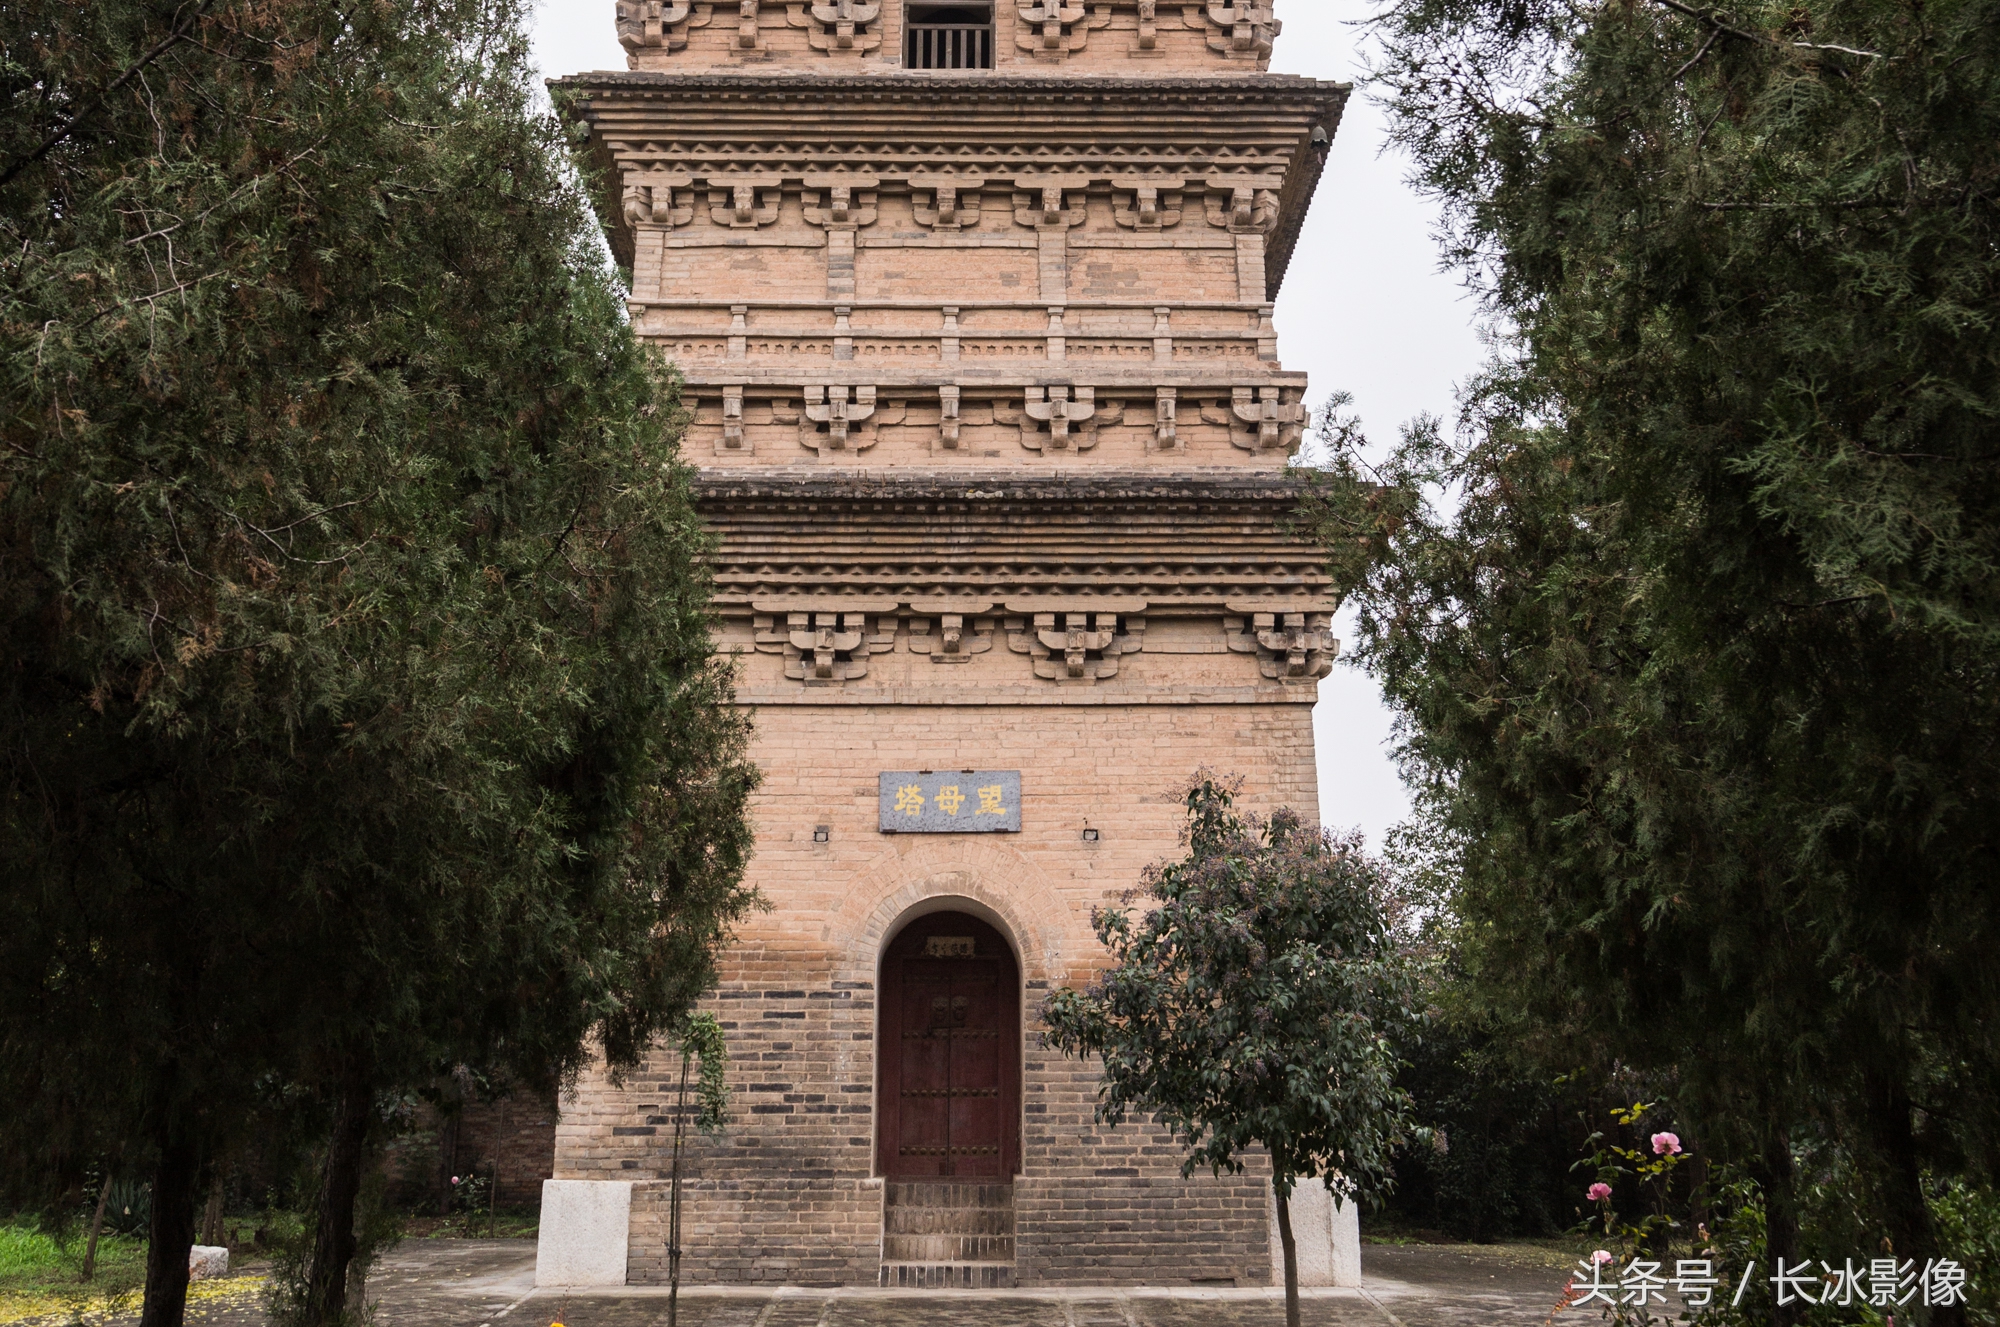 薄太后塔又名香积寺塔,位于陕西省礼泉县东25公里的烽火镇刘家村